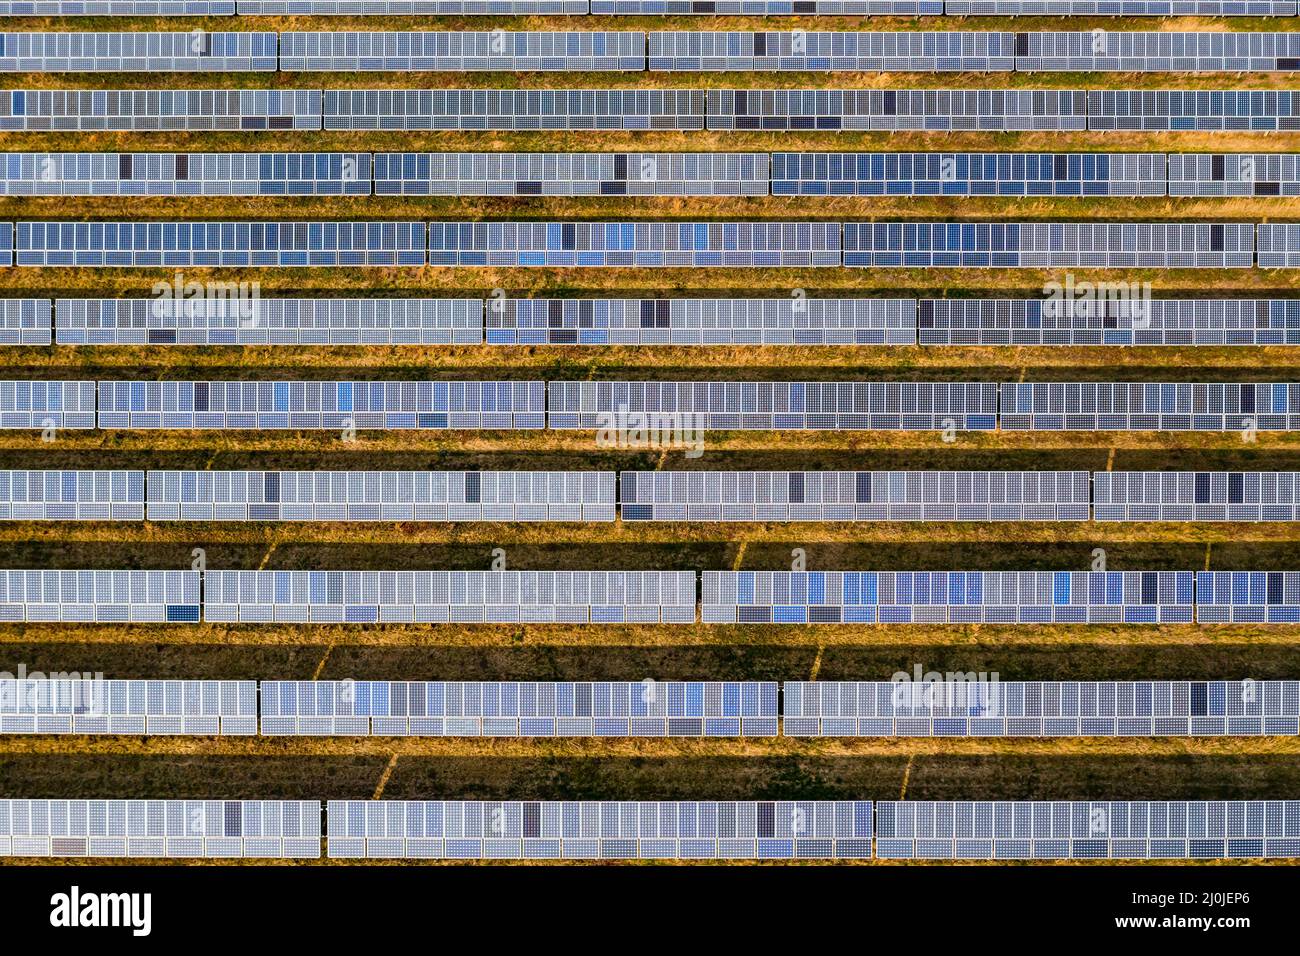 Drohnenbild eines großen Solarparks mit Solarmodulen aus einer bodenmontierten Solaranlage in Deutschland Stockfoto